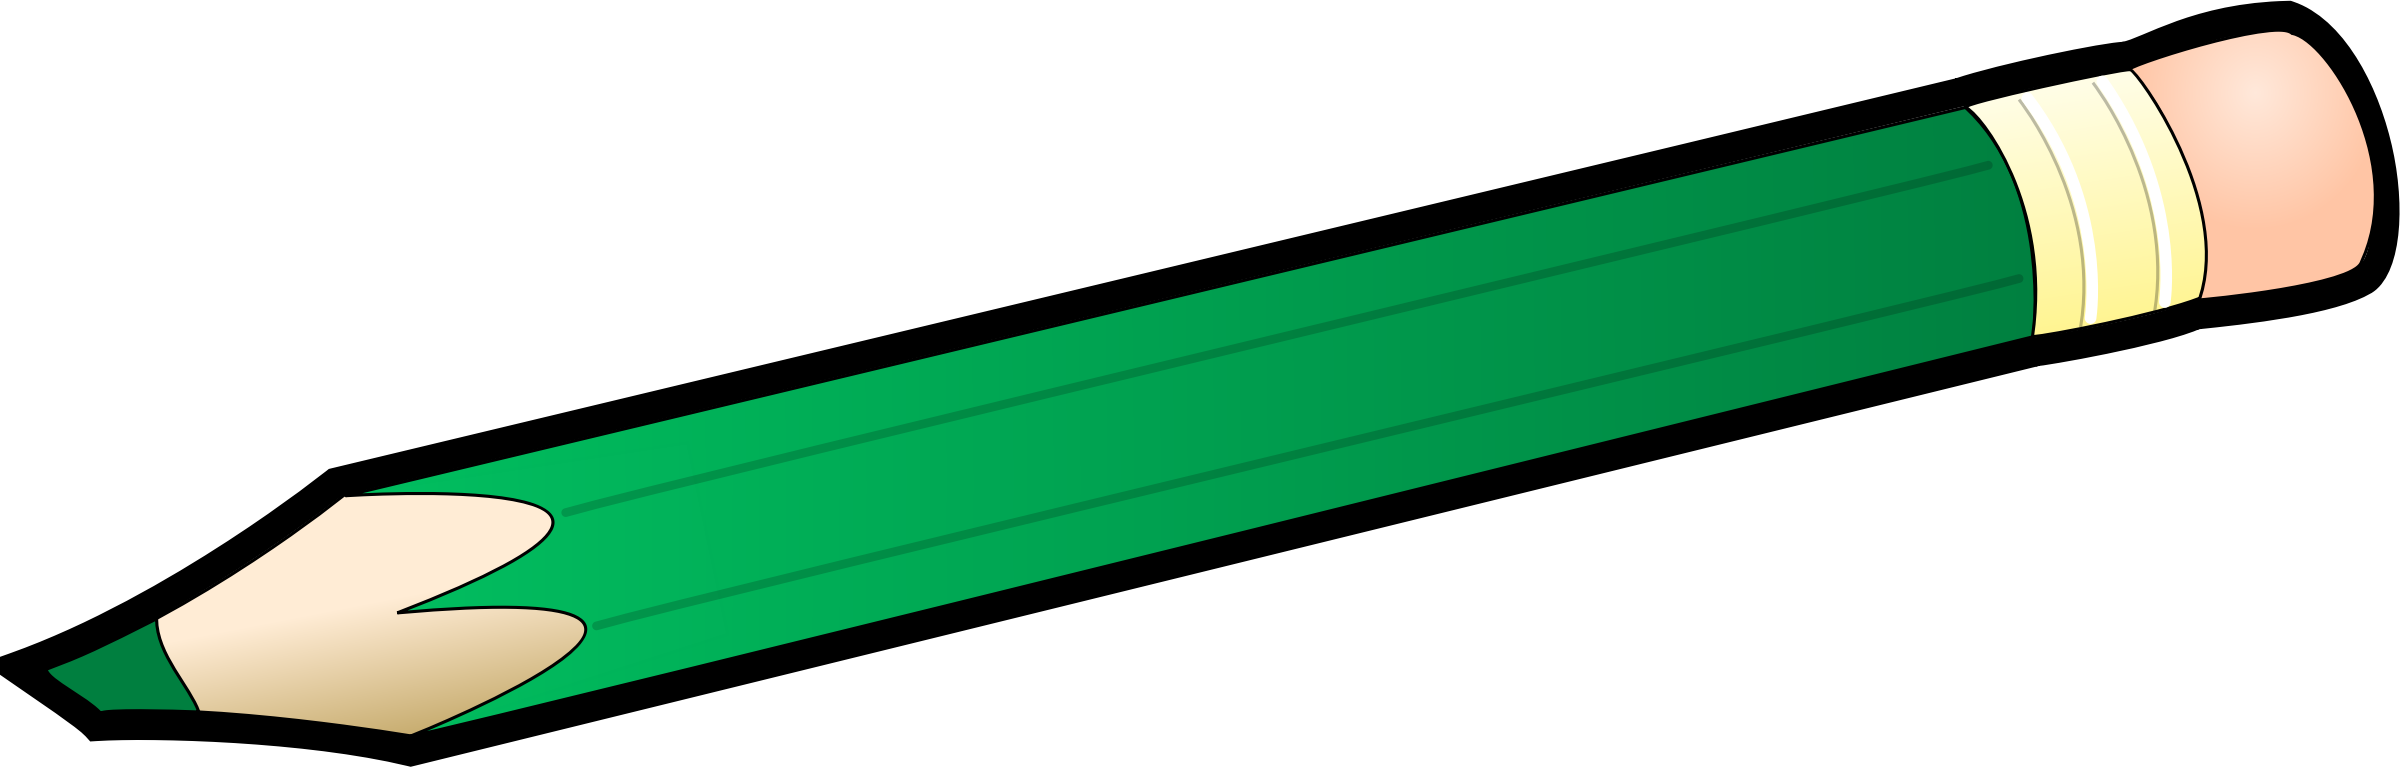 Clipart - Green Pencil